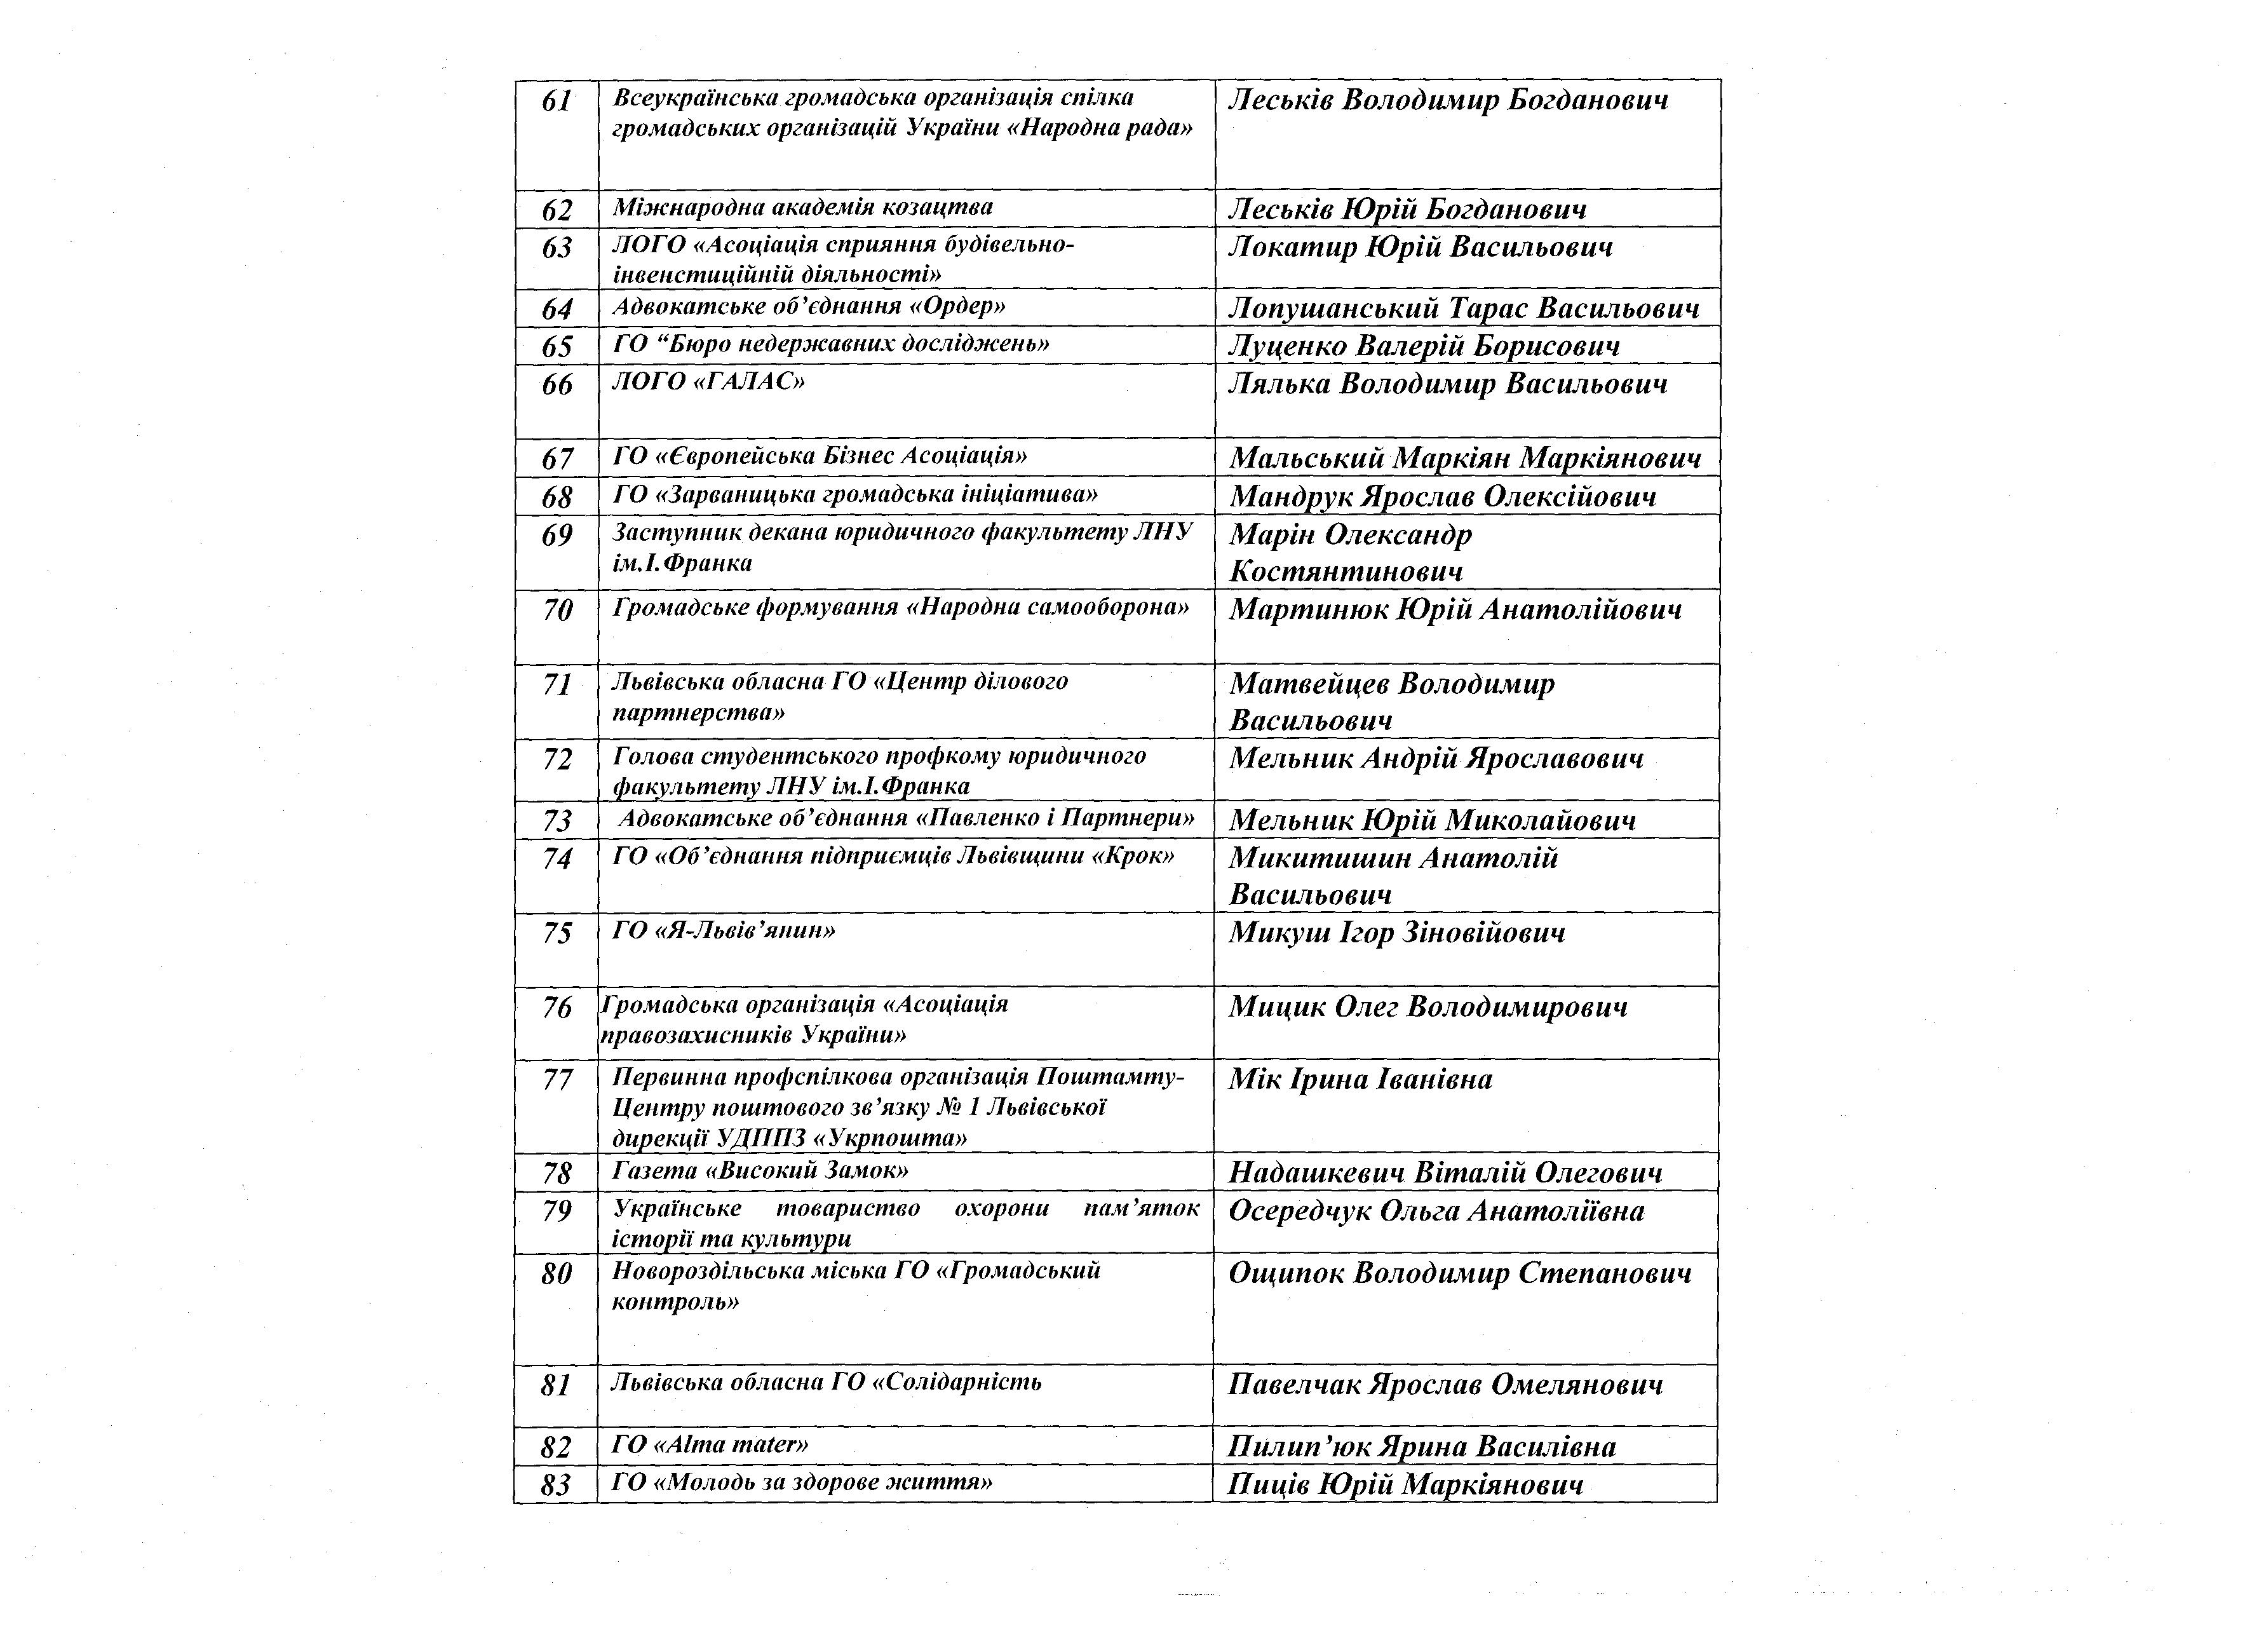 Список учасників Консультаційної ради